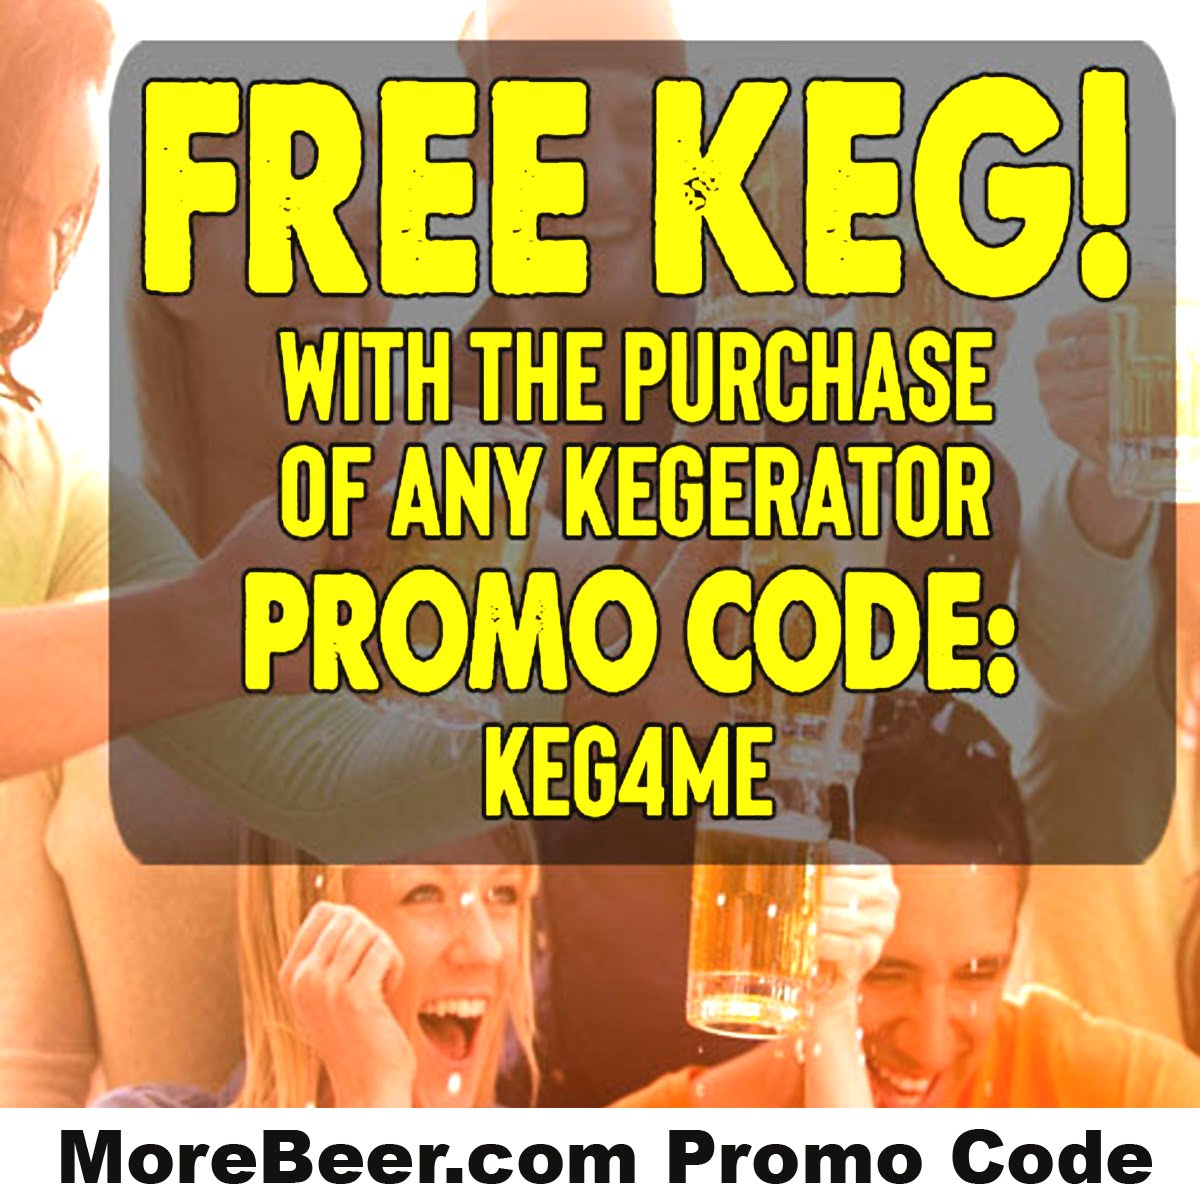 MoreBeer.com Promo Code for a free keg